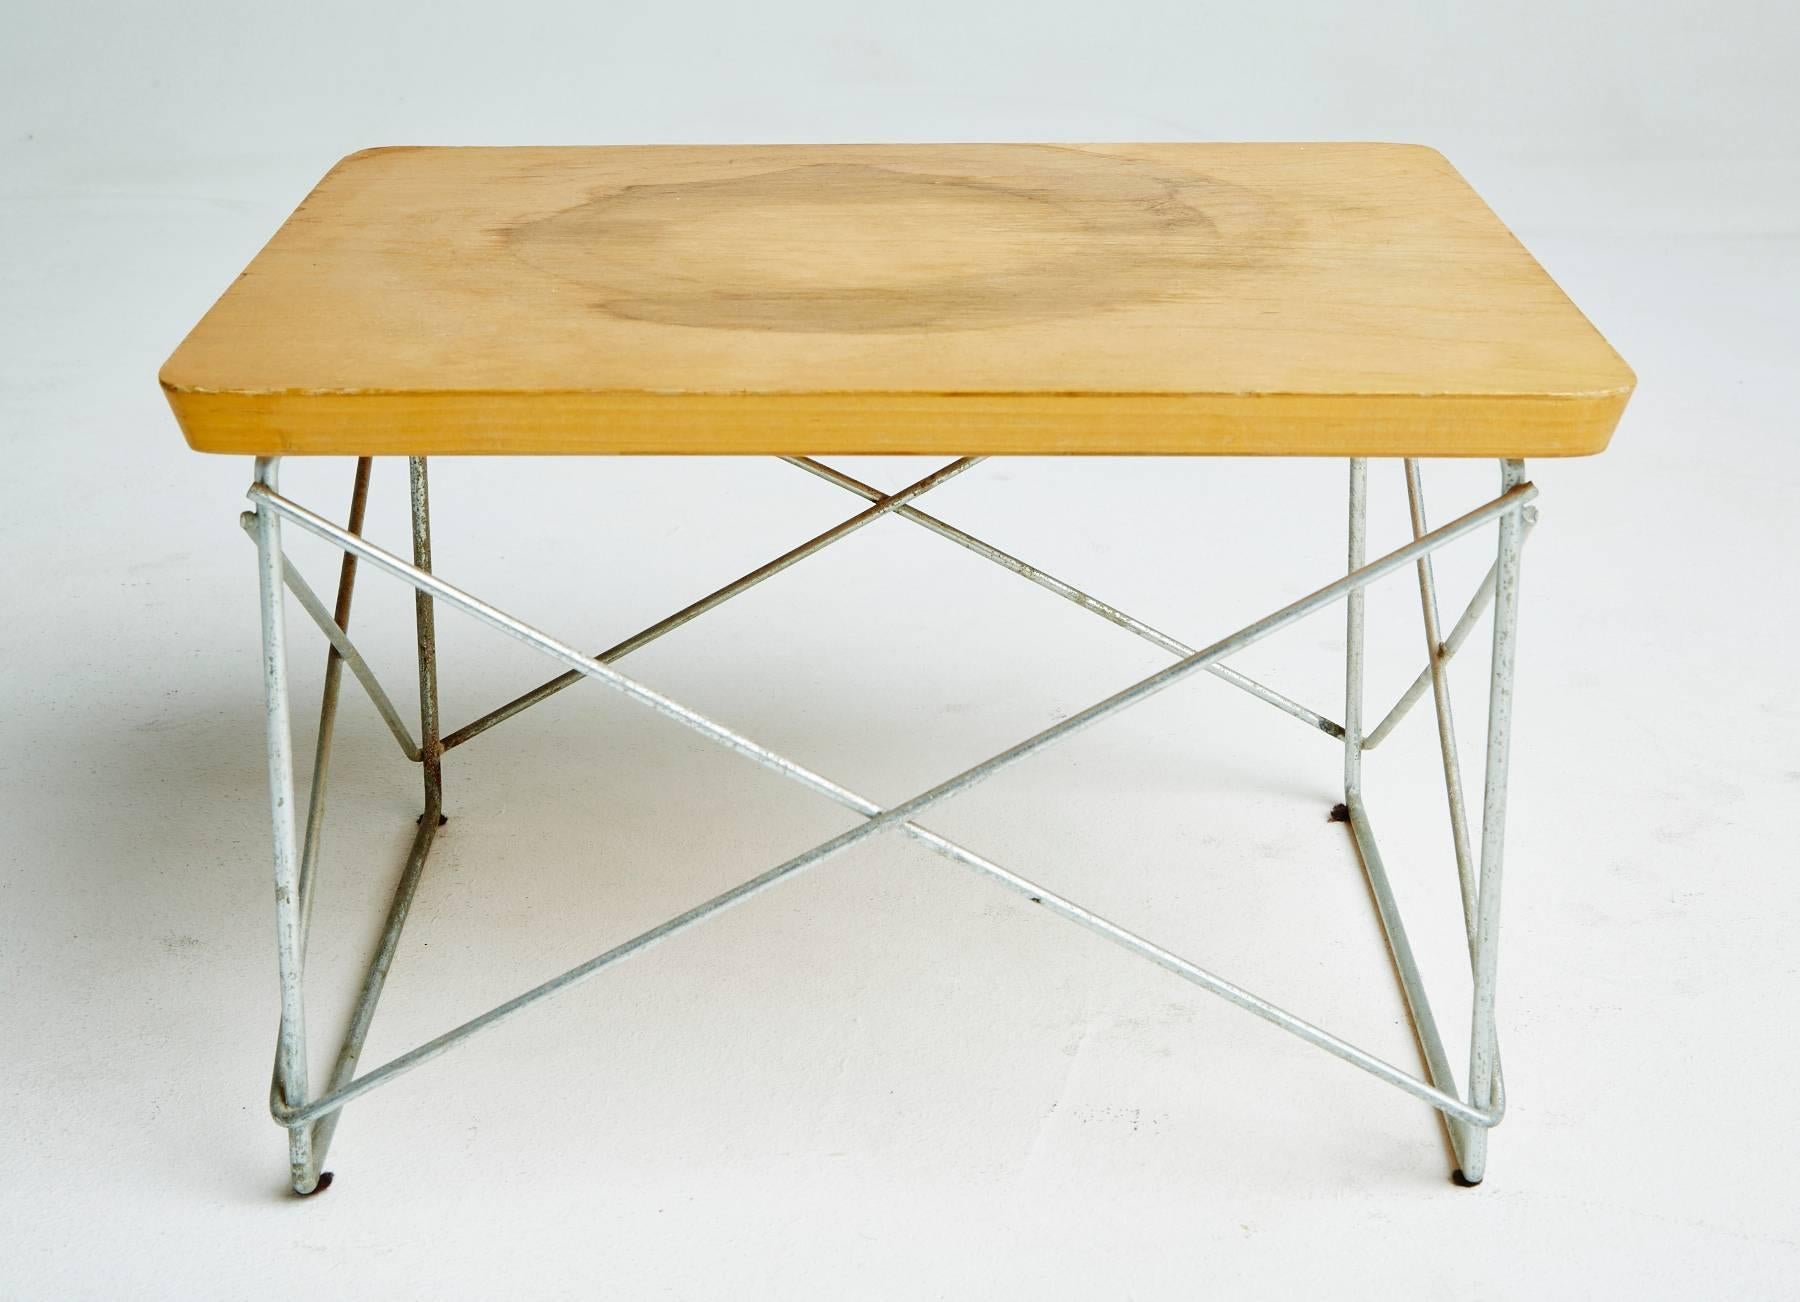 Mid-Century Modern Tables LTR en bouleau des années 1950 par Eames pour Herman Miller, première production, signées